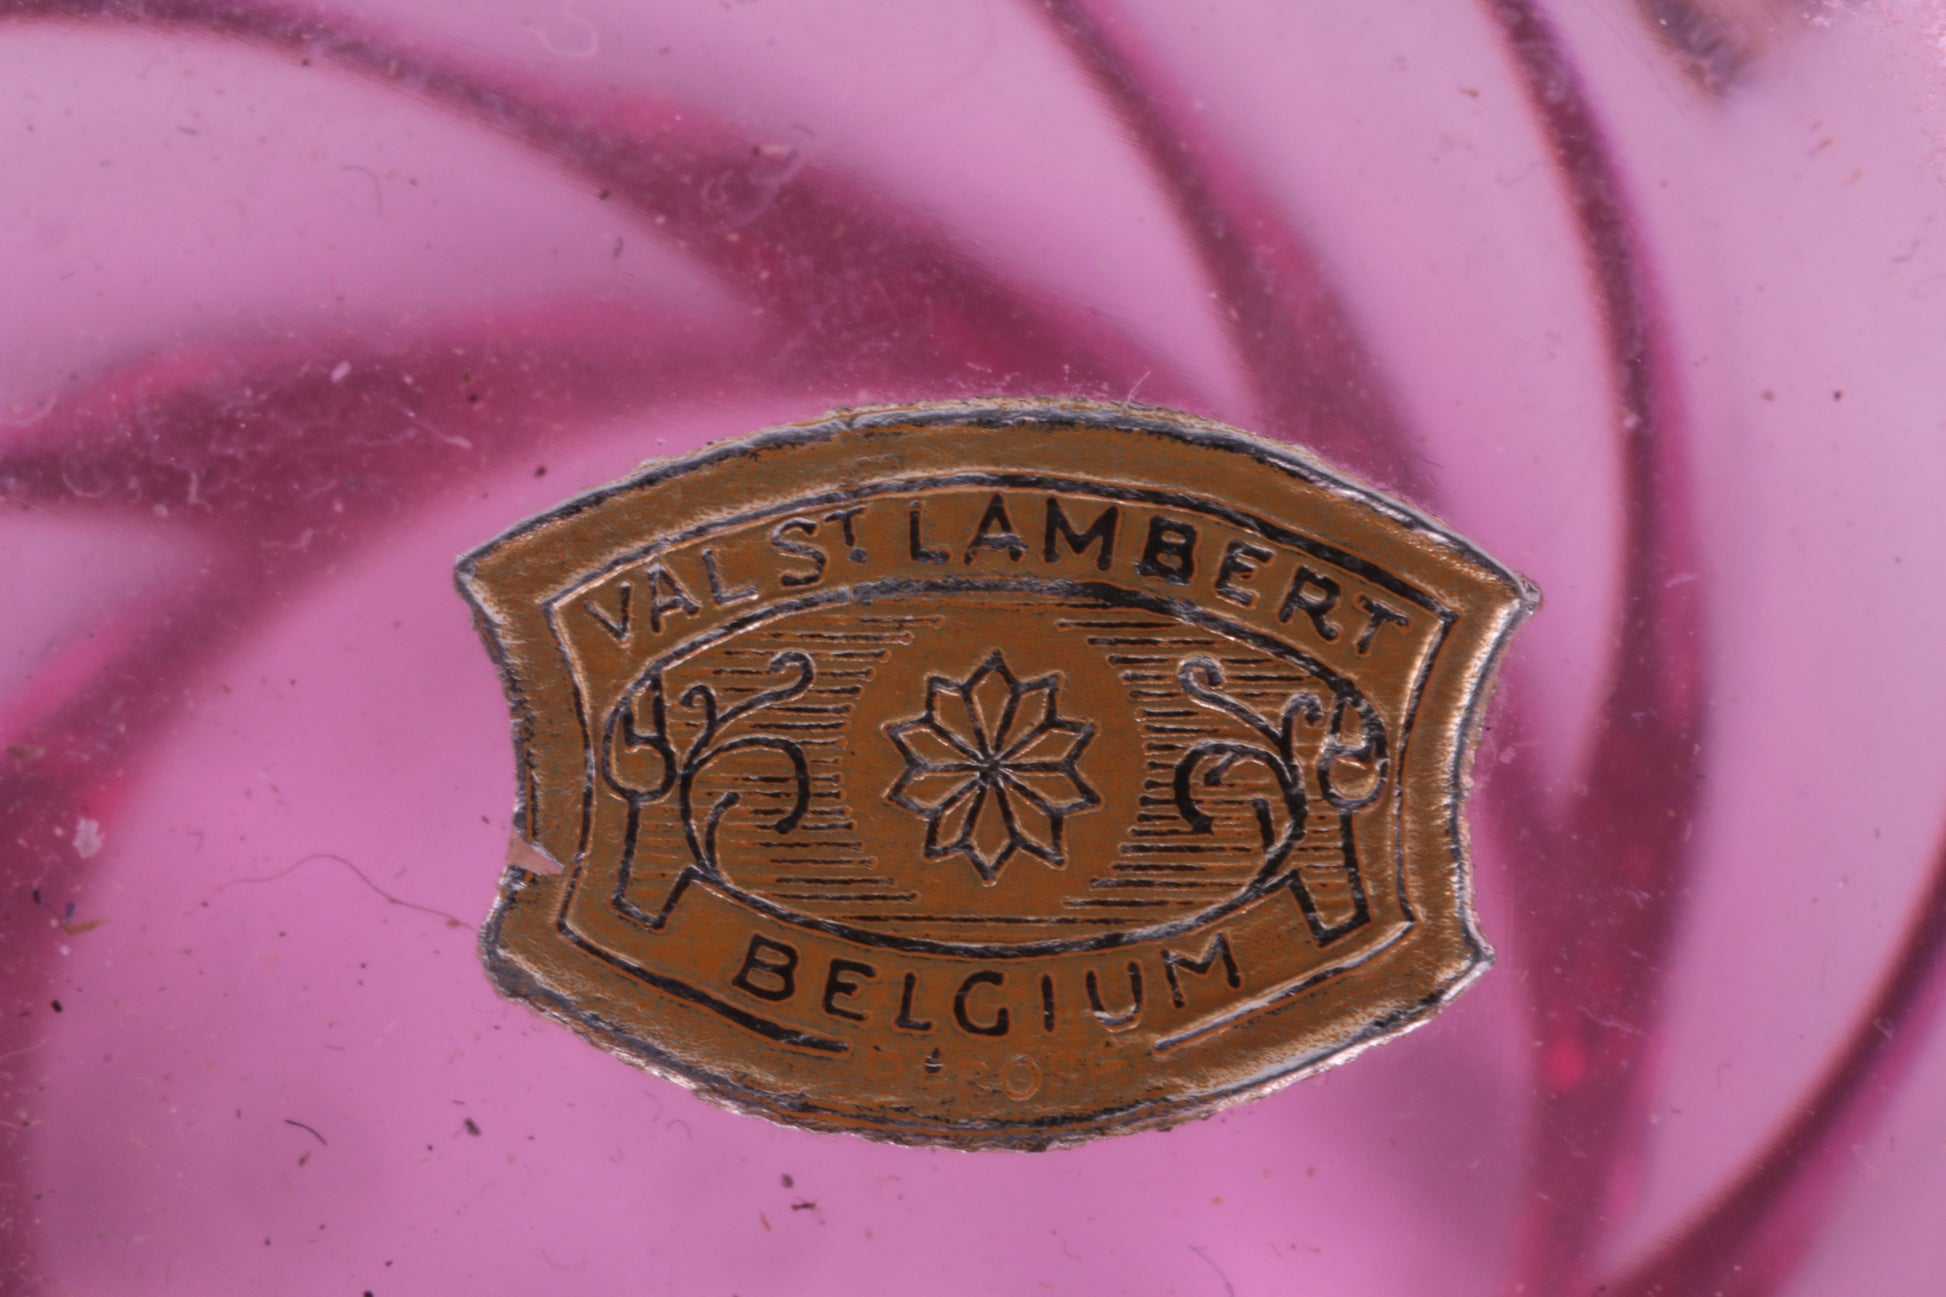 Vintage Grote Valsenlambert vaas Granberry kristal Belgie